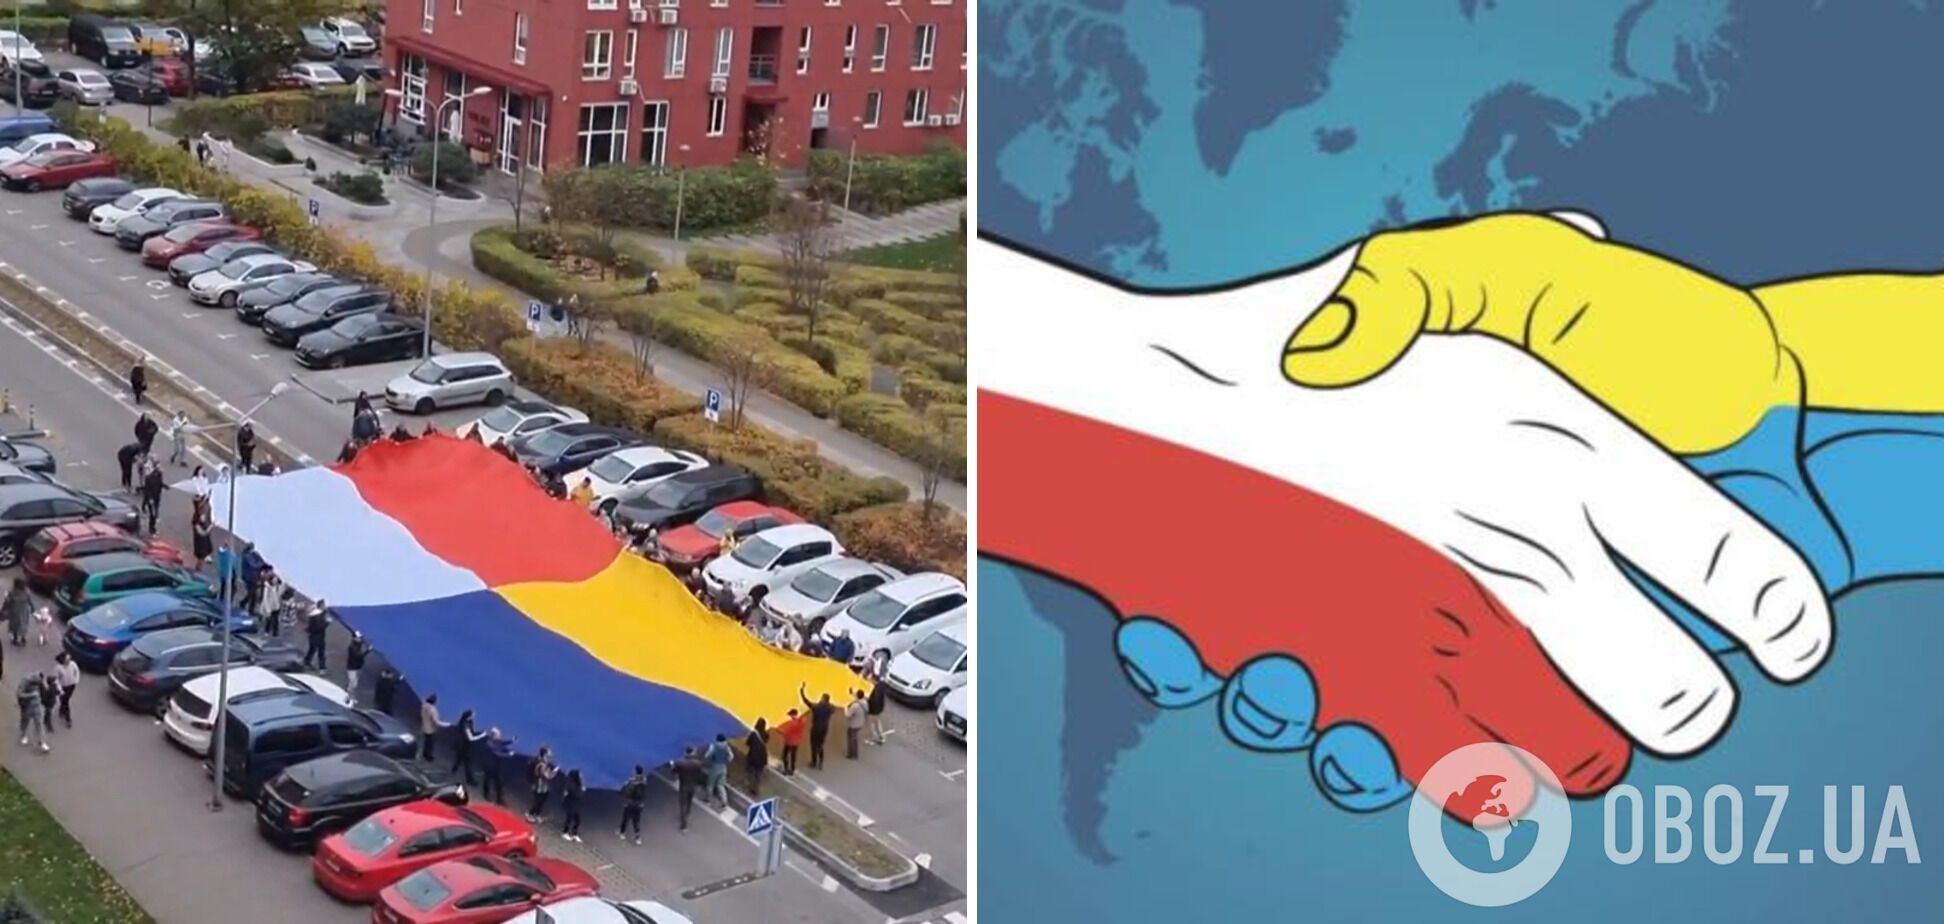 В Киеве развернули большой общий флаг Украины и Польши